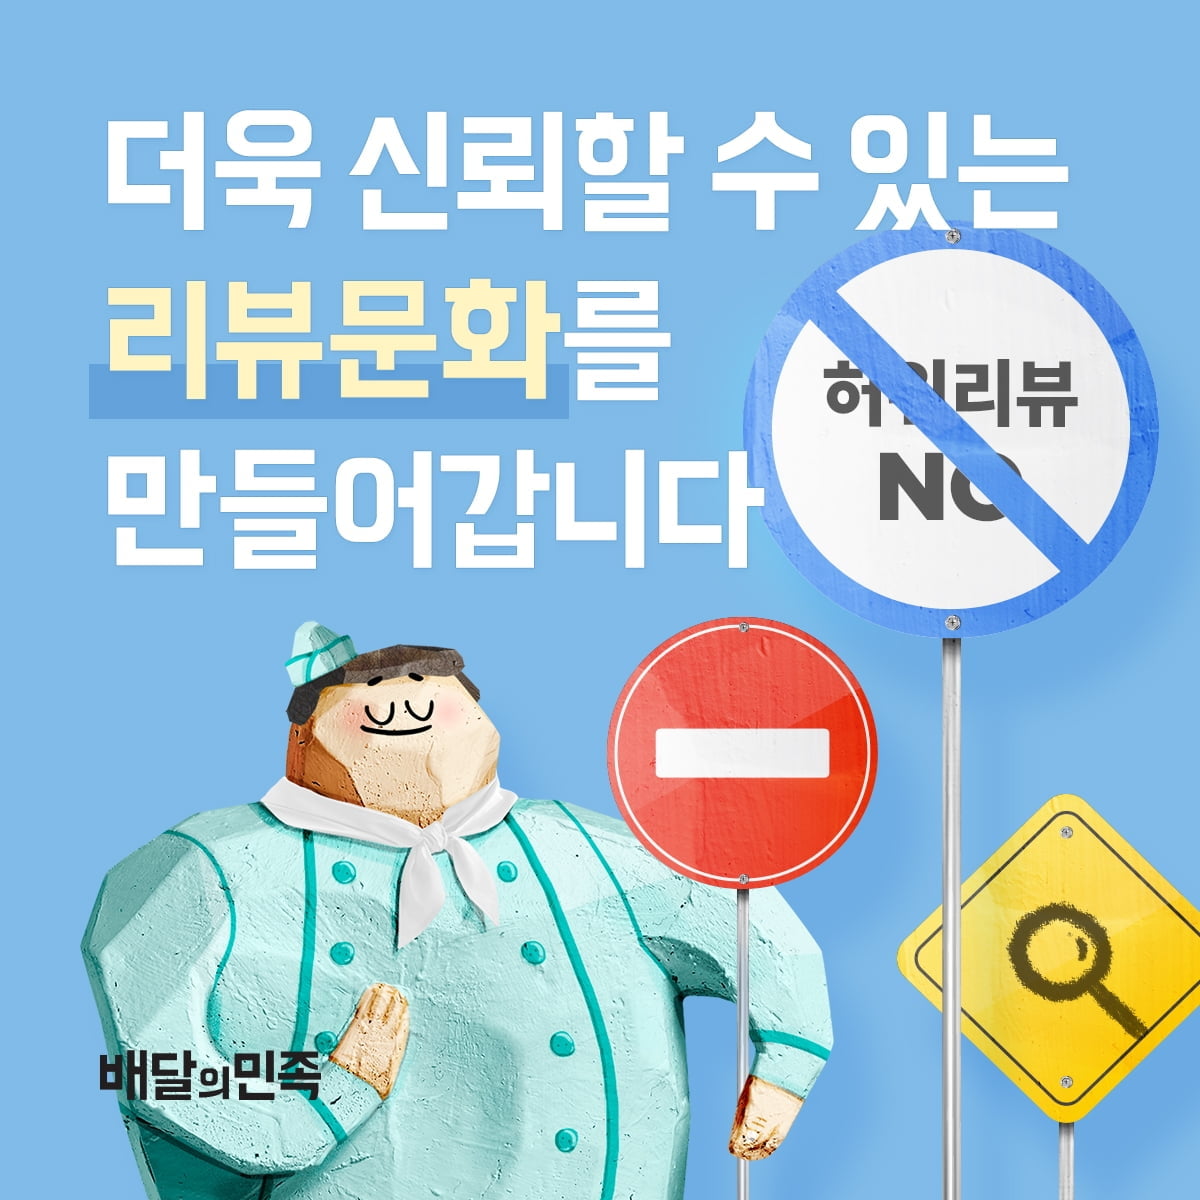 우아한형제들 "허위 리뷰·깡거래 강경 대응...리뷰조작 막겠다"